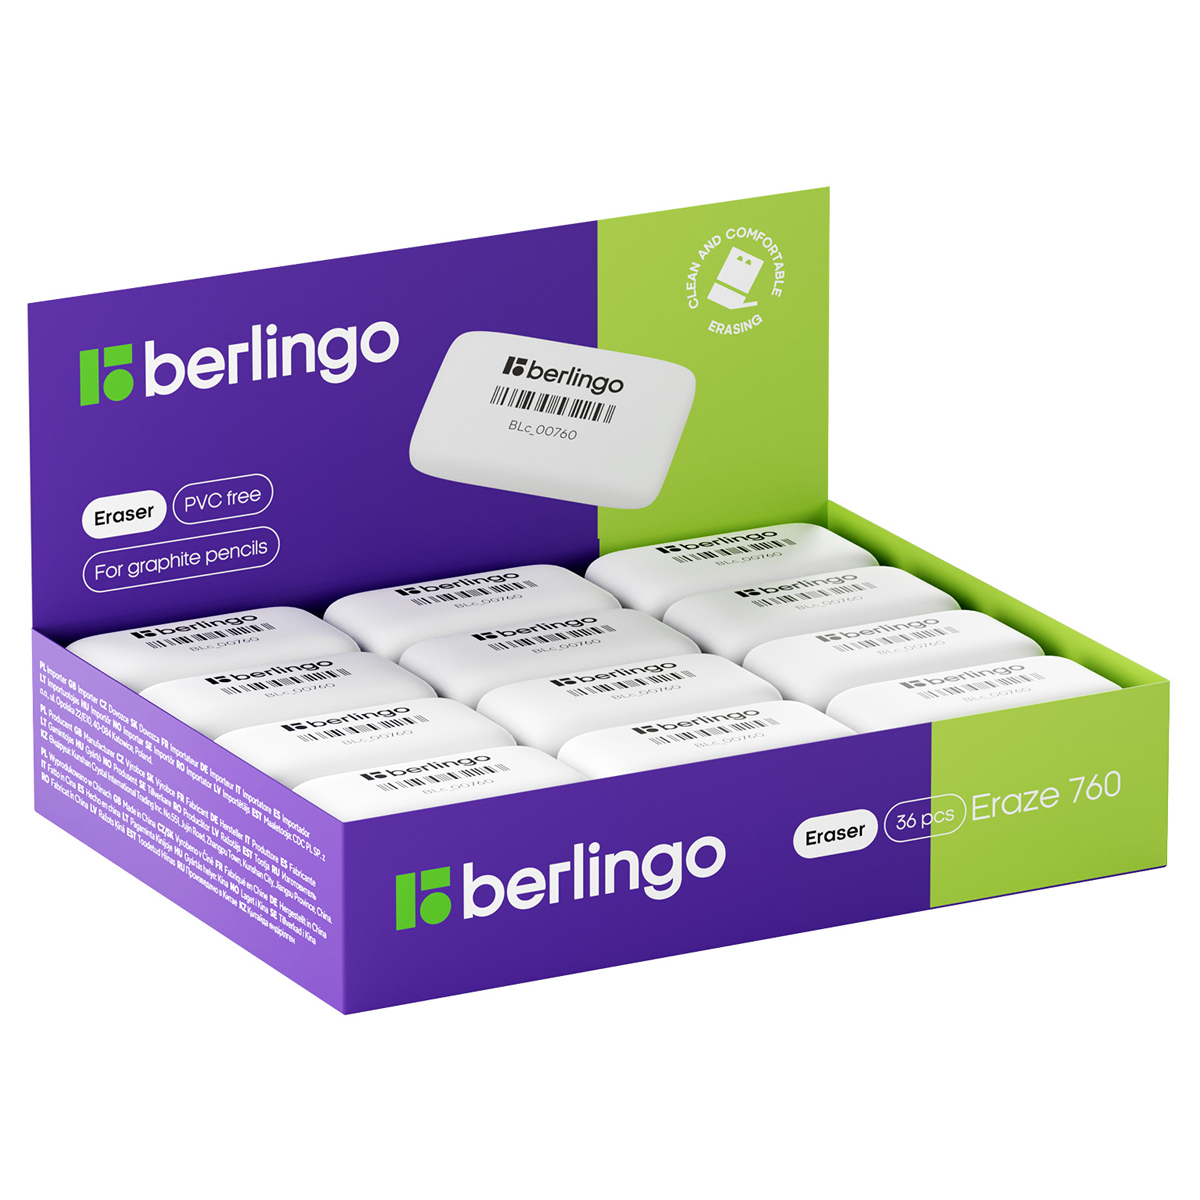 Ластик Berlingo Eraze 760, прямоугольный, термопластичная резина, 44*25*9мм (Вид 1)